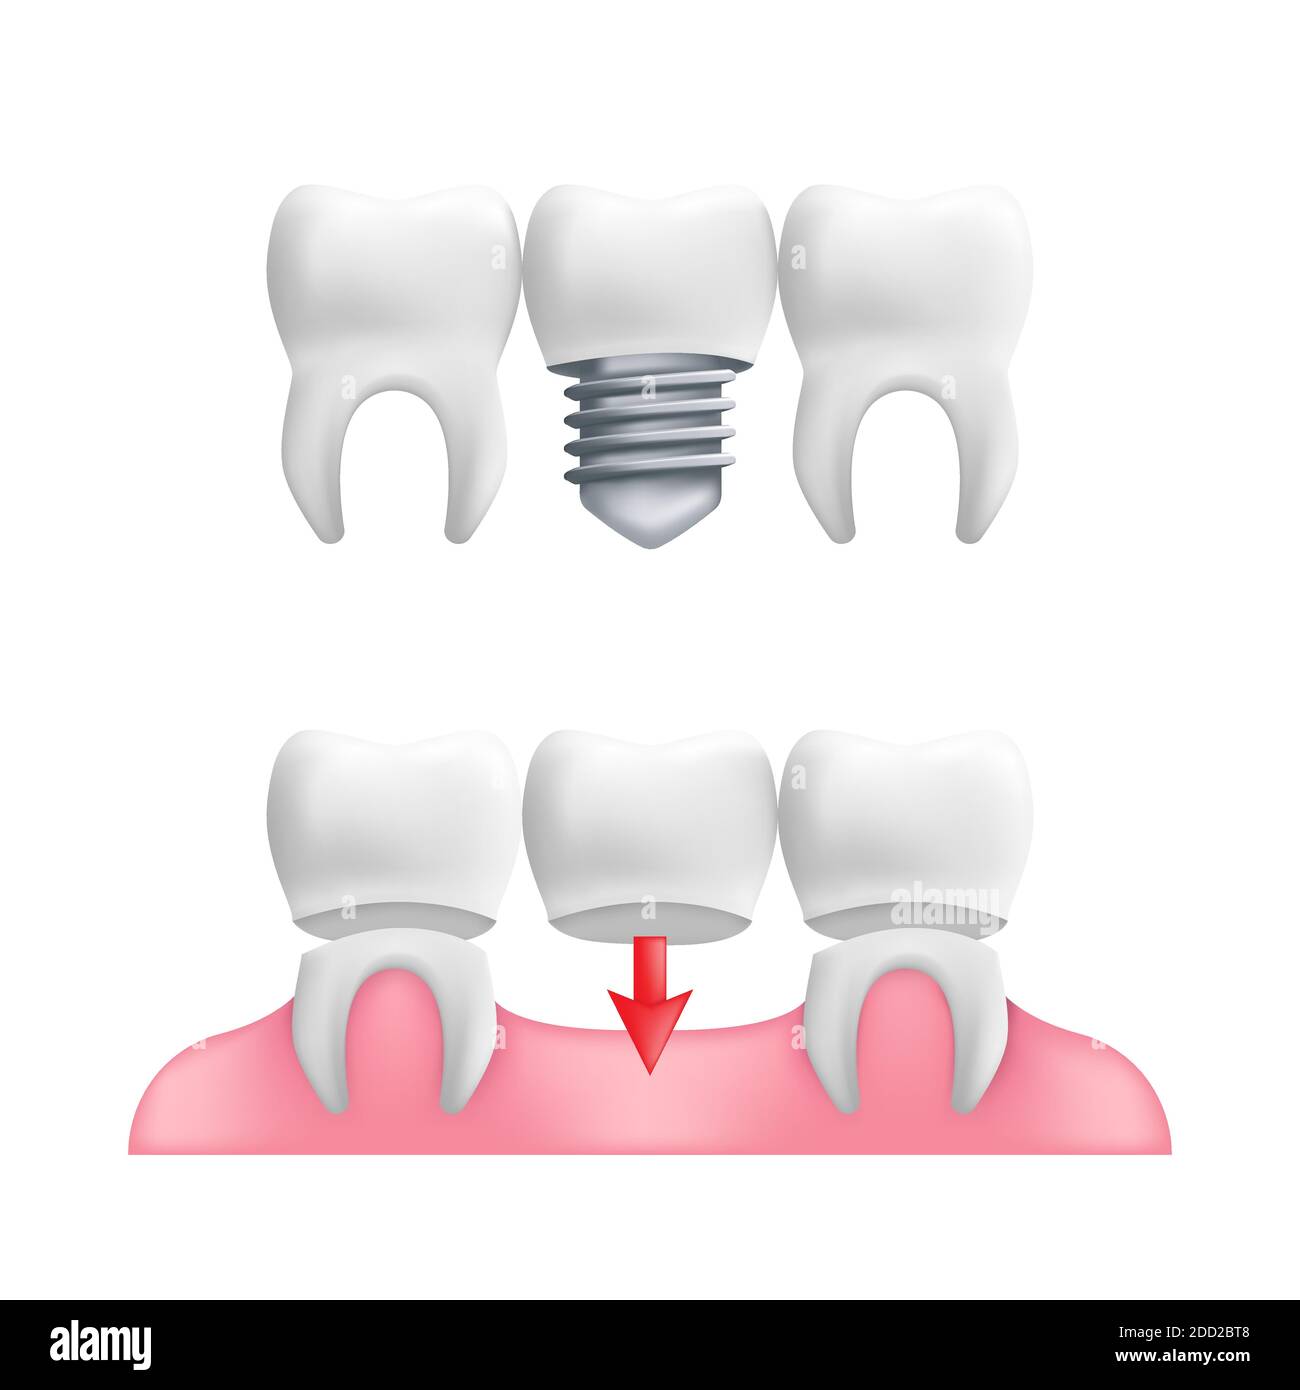 Prothesenkonzept - gesunde Zähne mit festen Zahnbridgearbeit und Implantaten. Vektordarstellung von menschlichen Zähnen in einem 3d realistischen Stil isoliert auf einem wh Stock Vektor